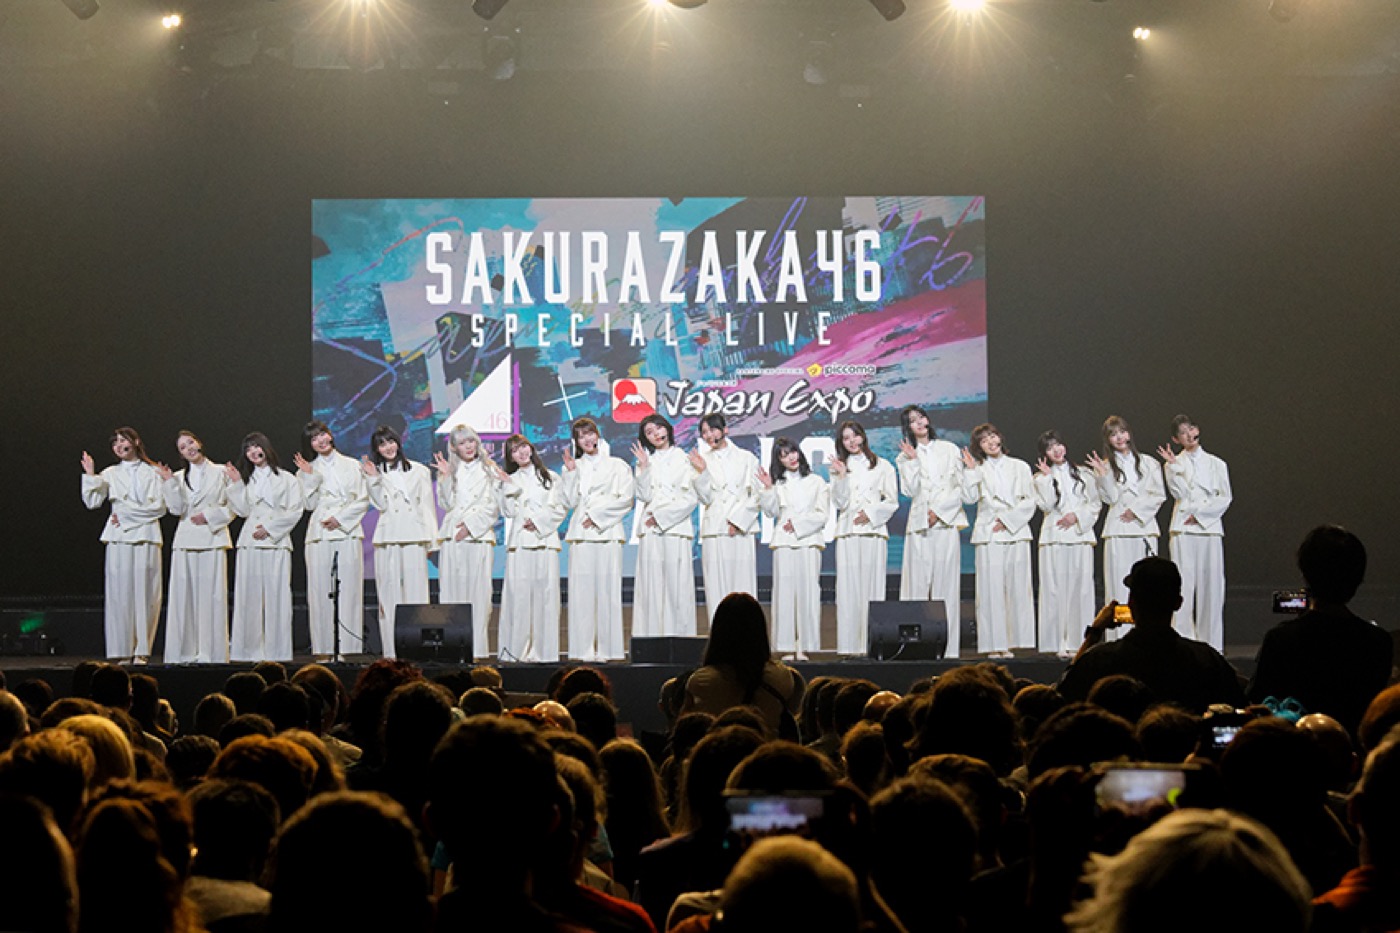 【ライブレポート】櫻坂46、初の海外イベントでフランス・パリの1万5,000人のオーディエンスを魅了